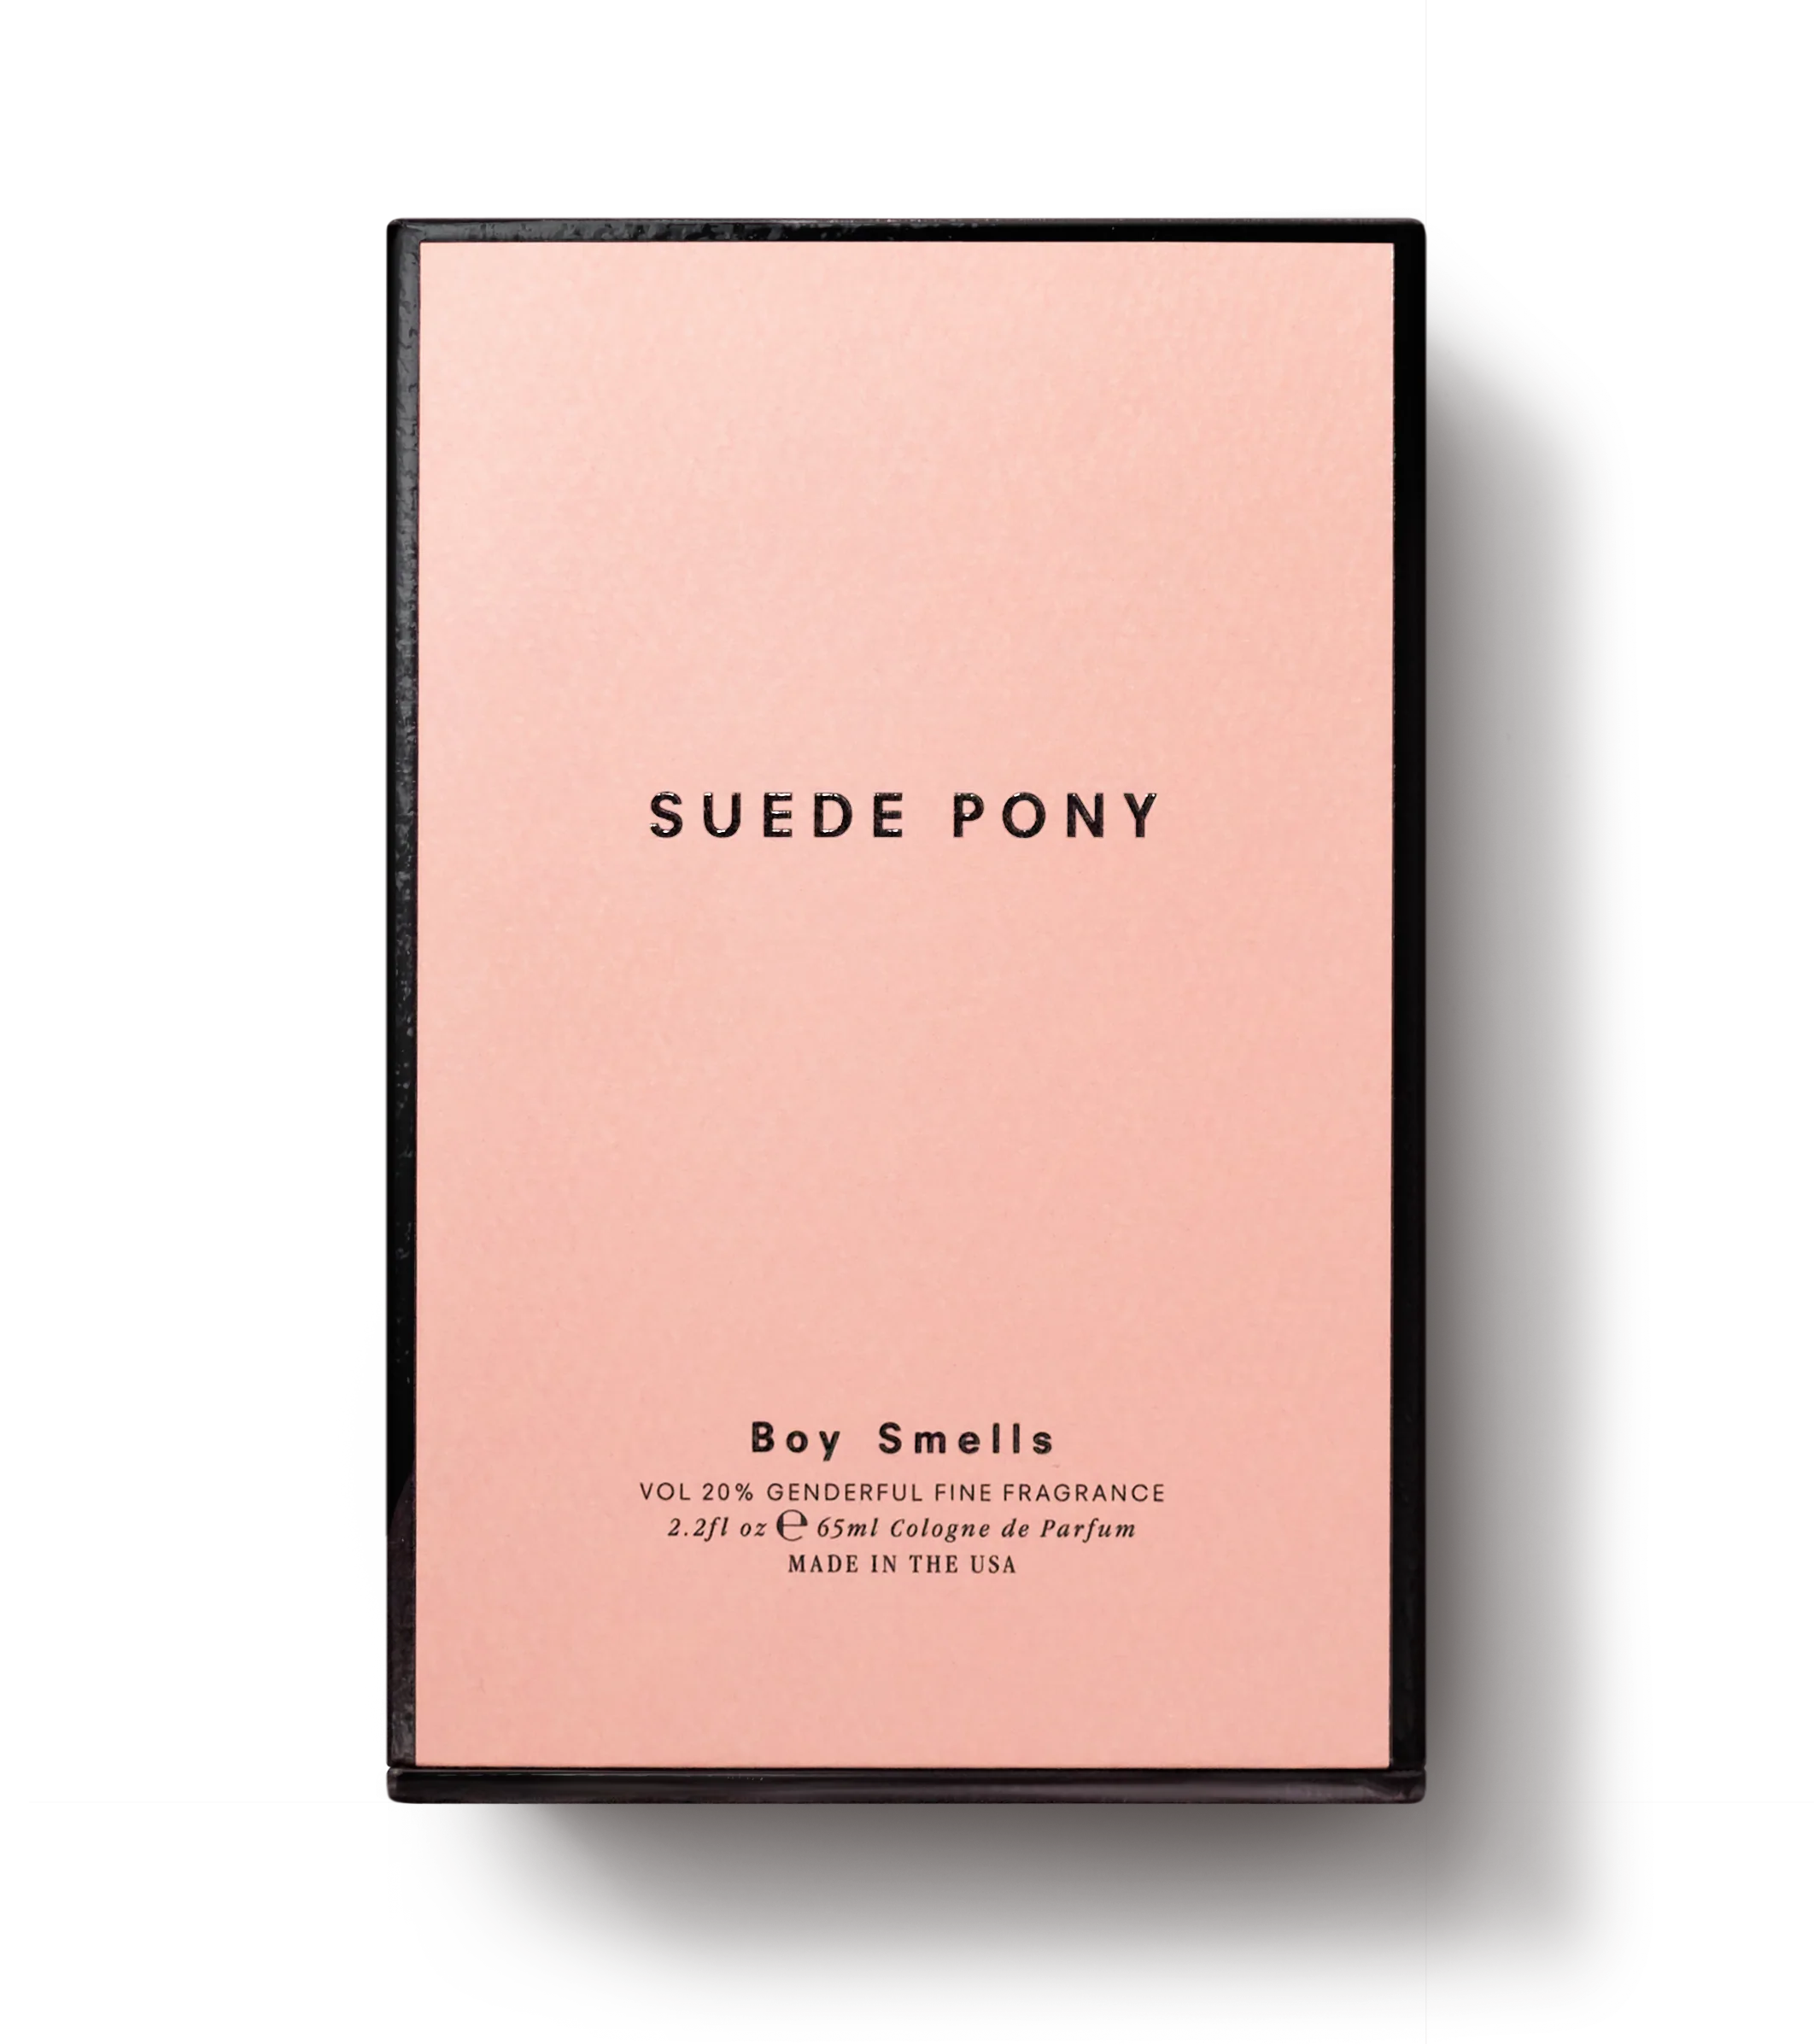 Boys Smells Suede Pony - Eau de Parfum